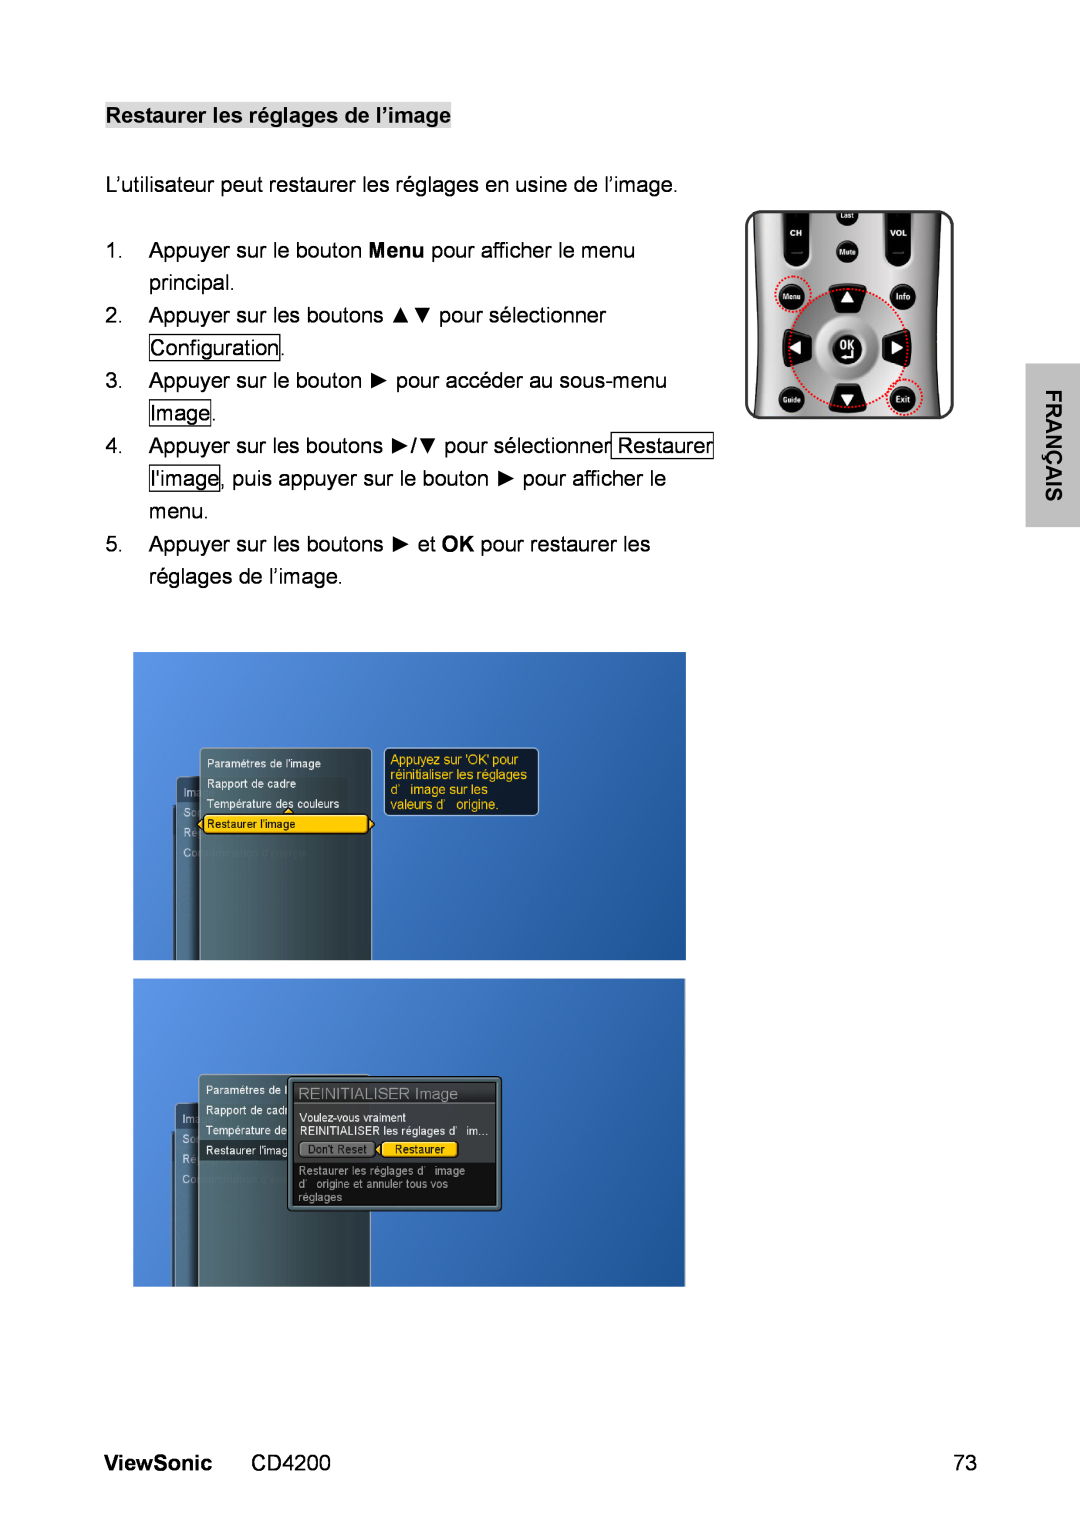 ViewSonic manual Restaurer les réglages de l’image, Français, ViewSonic CD4200 